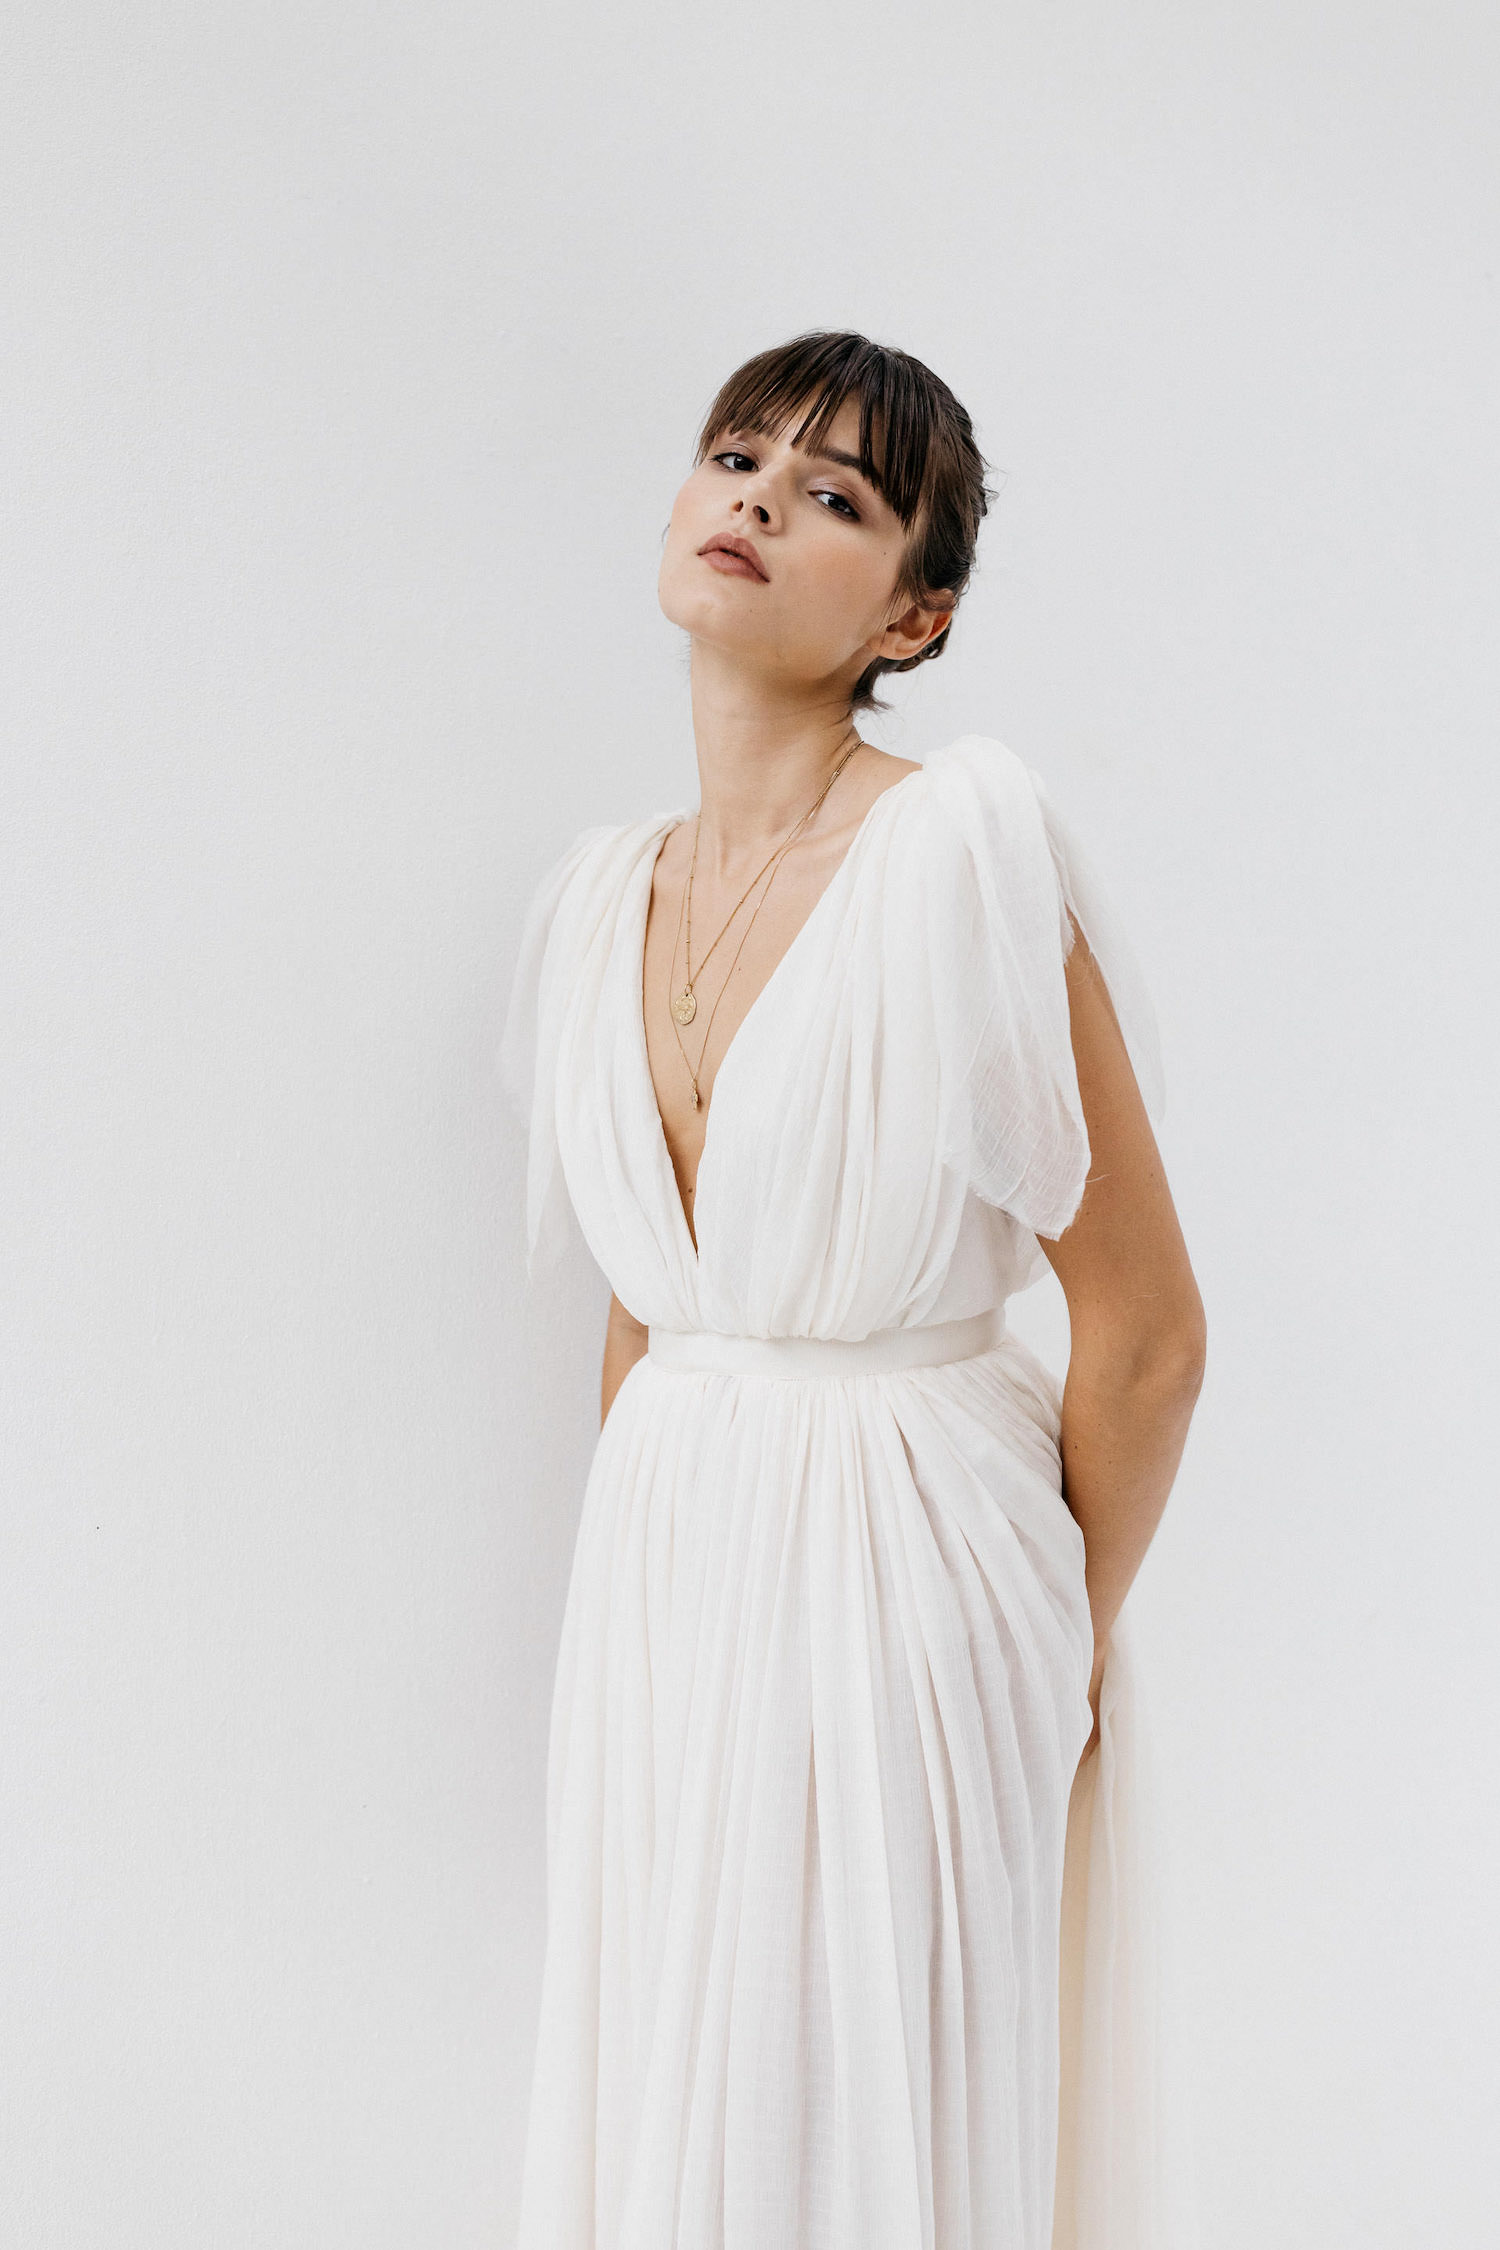 Meraki-Paris Collection 2021 - Robes de mariée - Blog Mariage Madame C